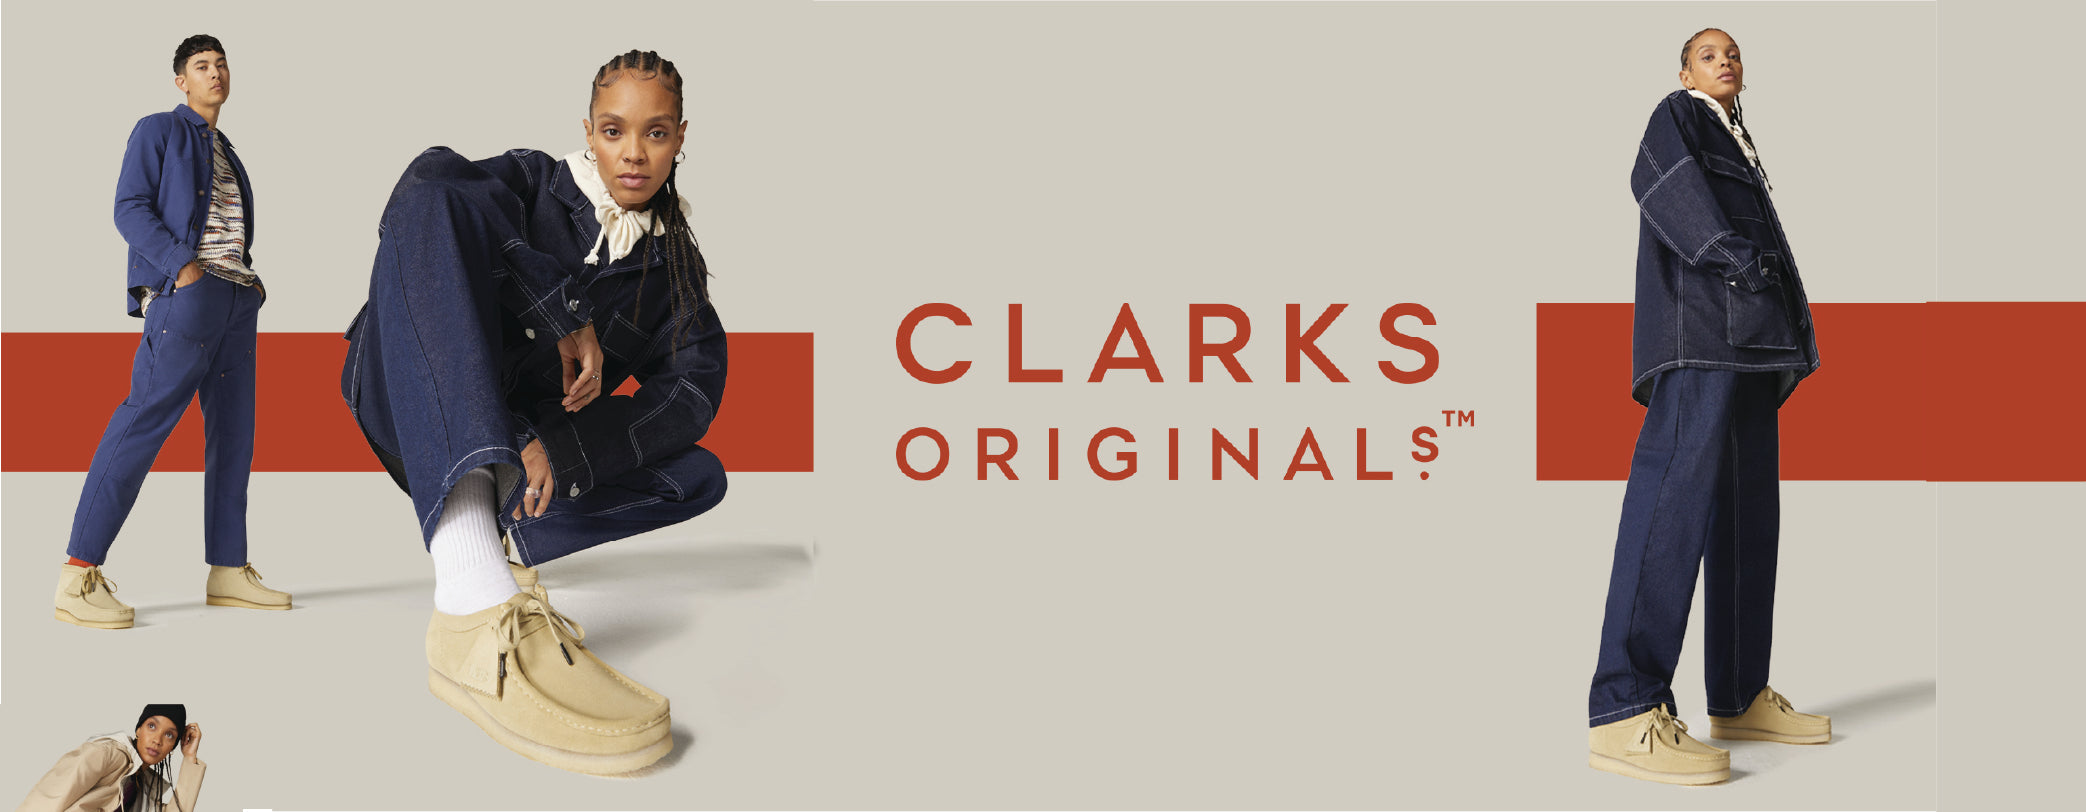 dialog Rug Kom forbi for at vide det Buy Men's Clarks Originals Online | Men's Shoes Online | Clarks SG